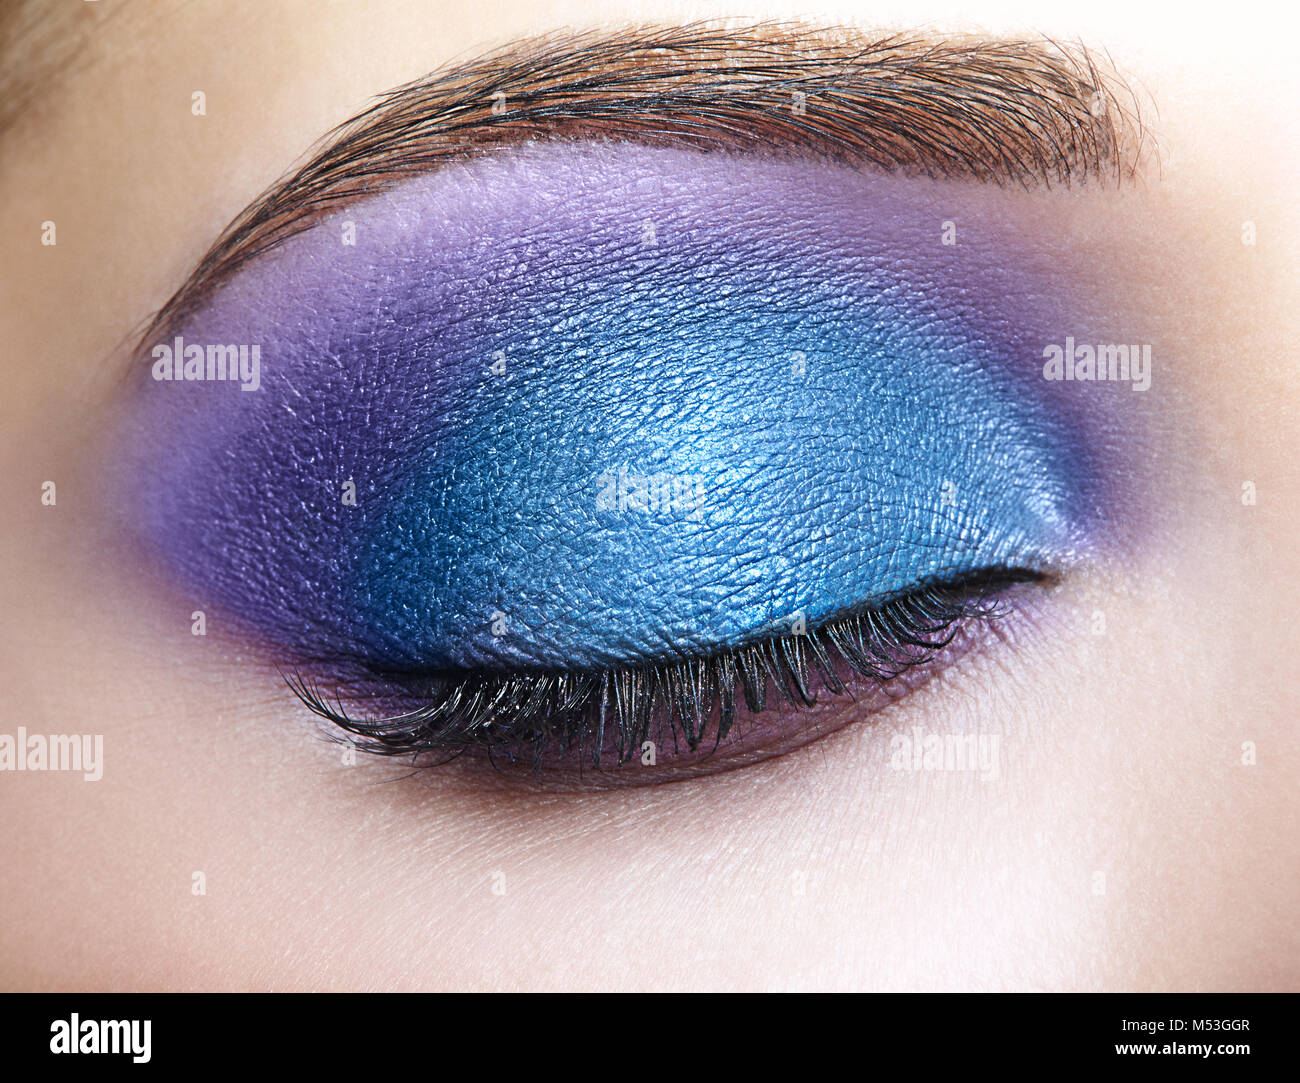 Fermé les yeux des femmes avec le maquillage bleu et violet Photo Stock -  Alamy